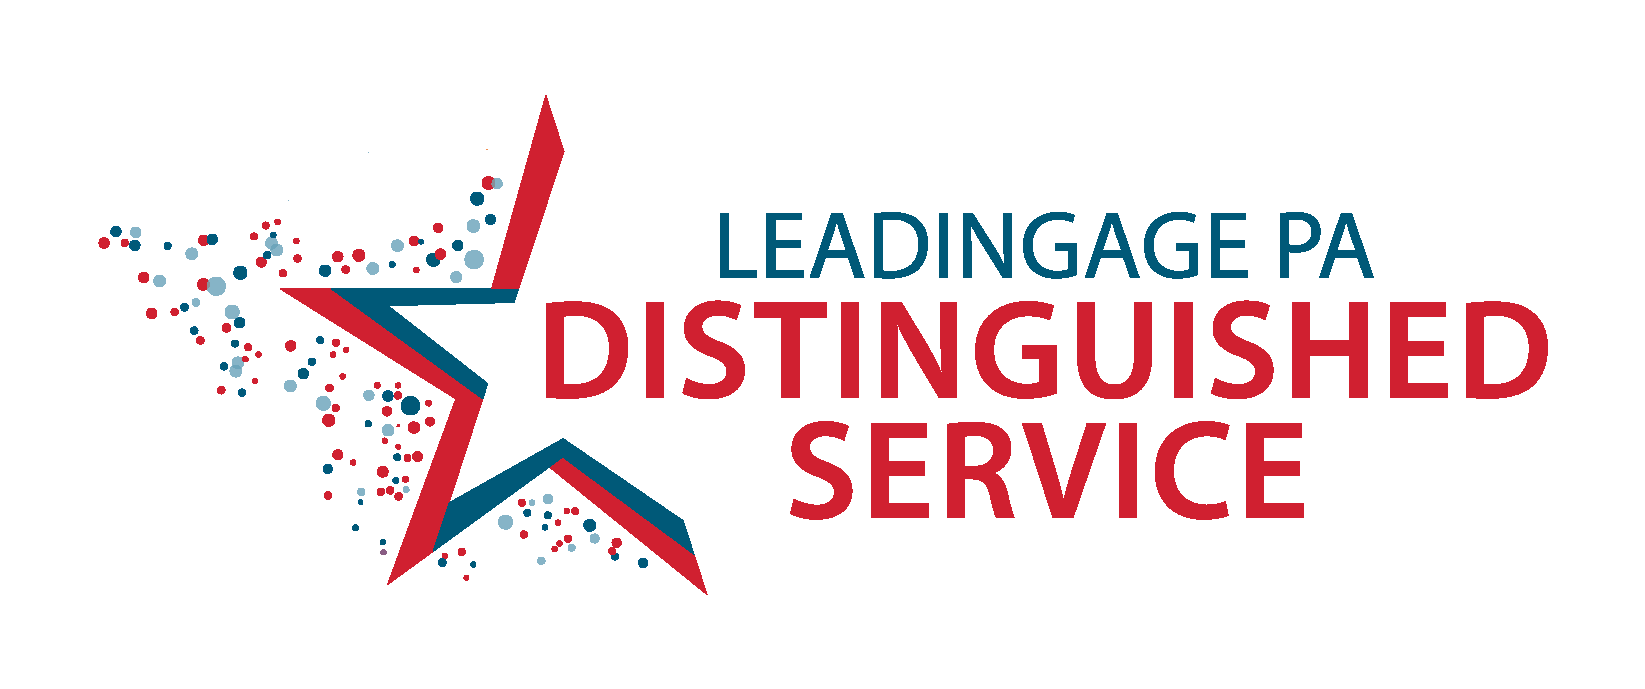 Image with LeadingAge PA Distinguished Service awards logo